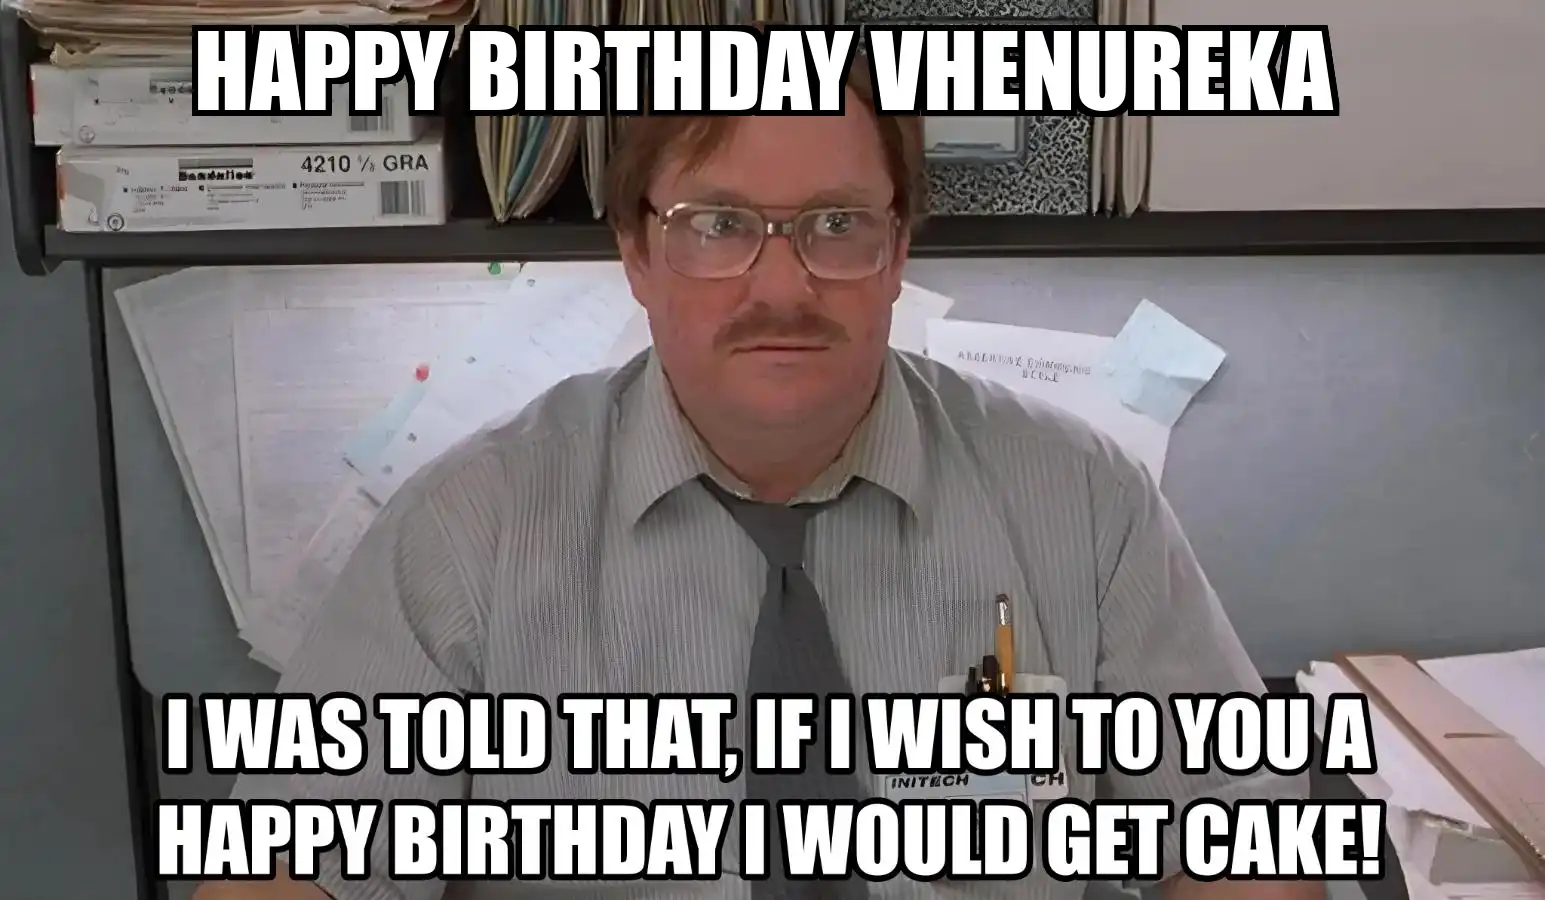 Happy Birthday Vhenureka I Would Get A Cake Meme